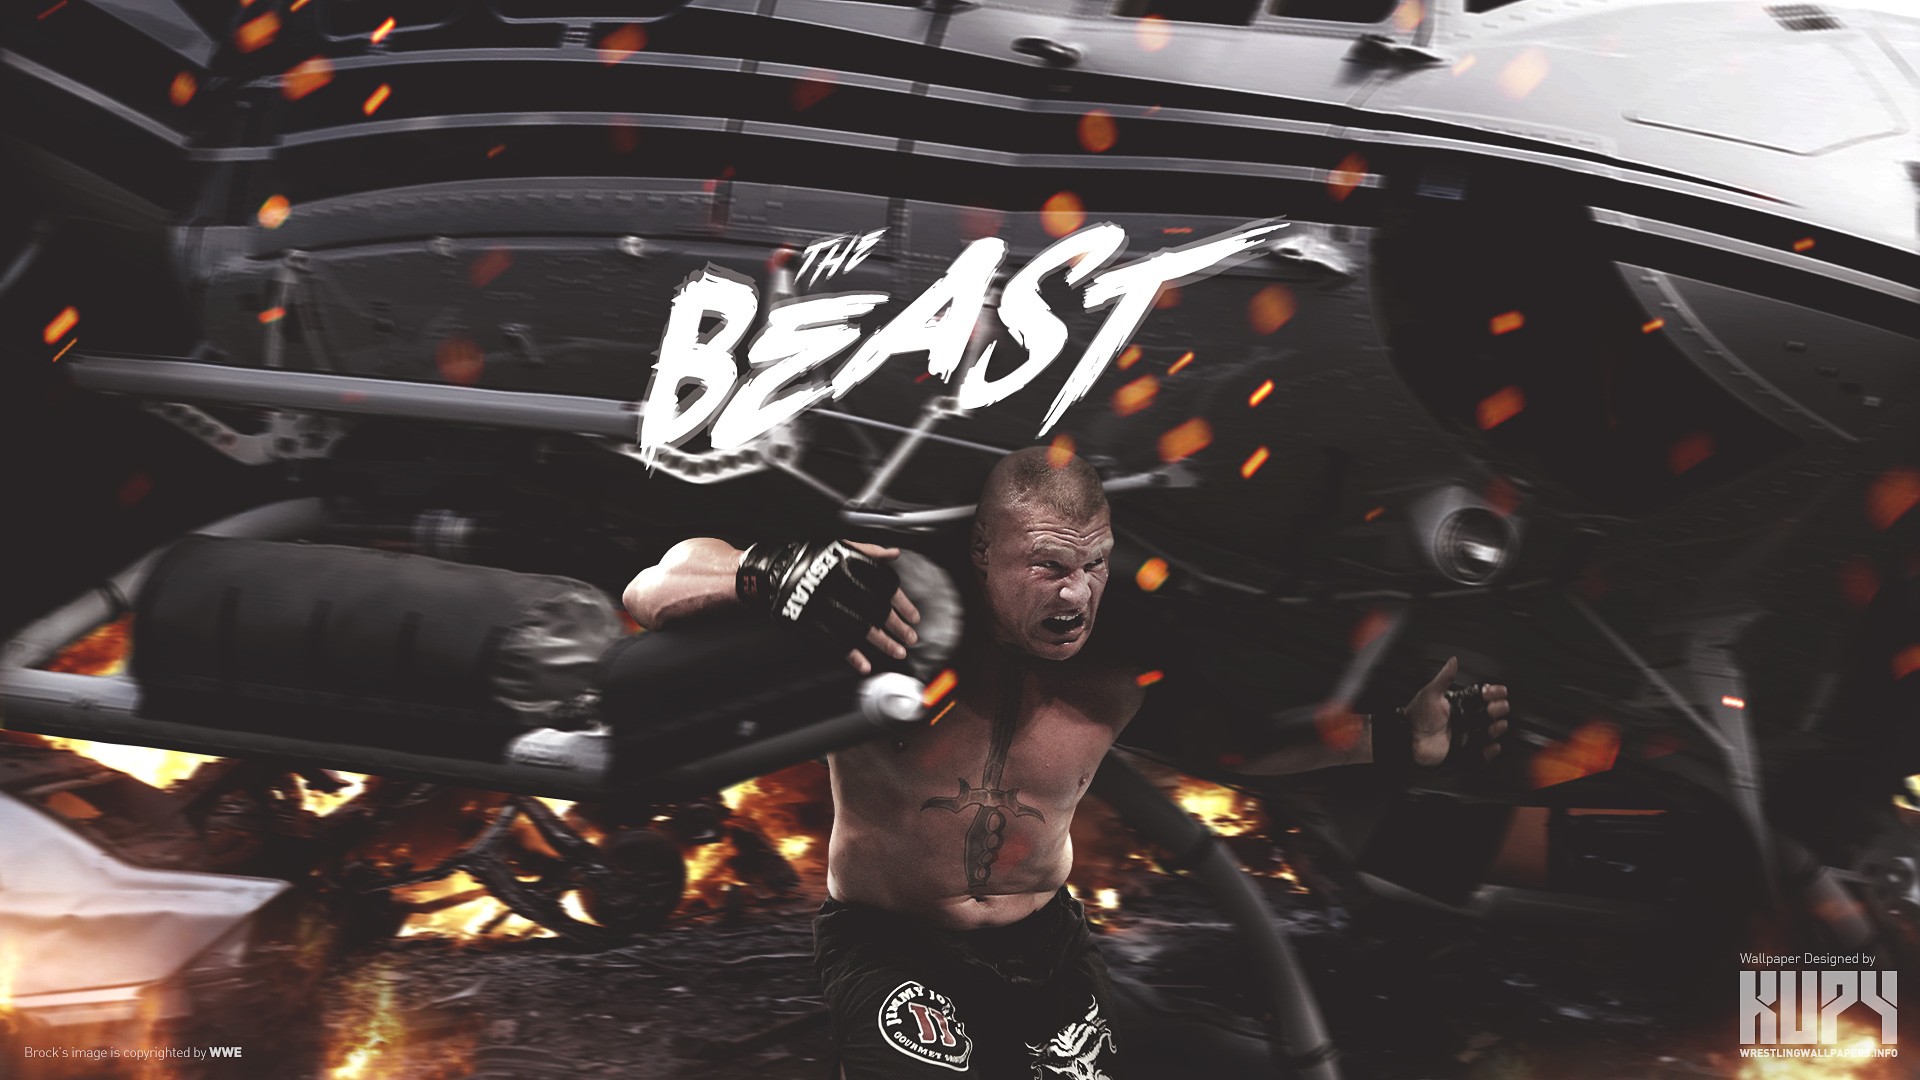 Wwe Brock Lesnar Wrestling Wallpapers Hd Desktop And Mobile Backgrounds